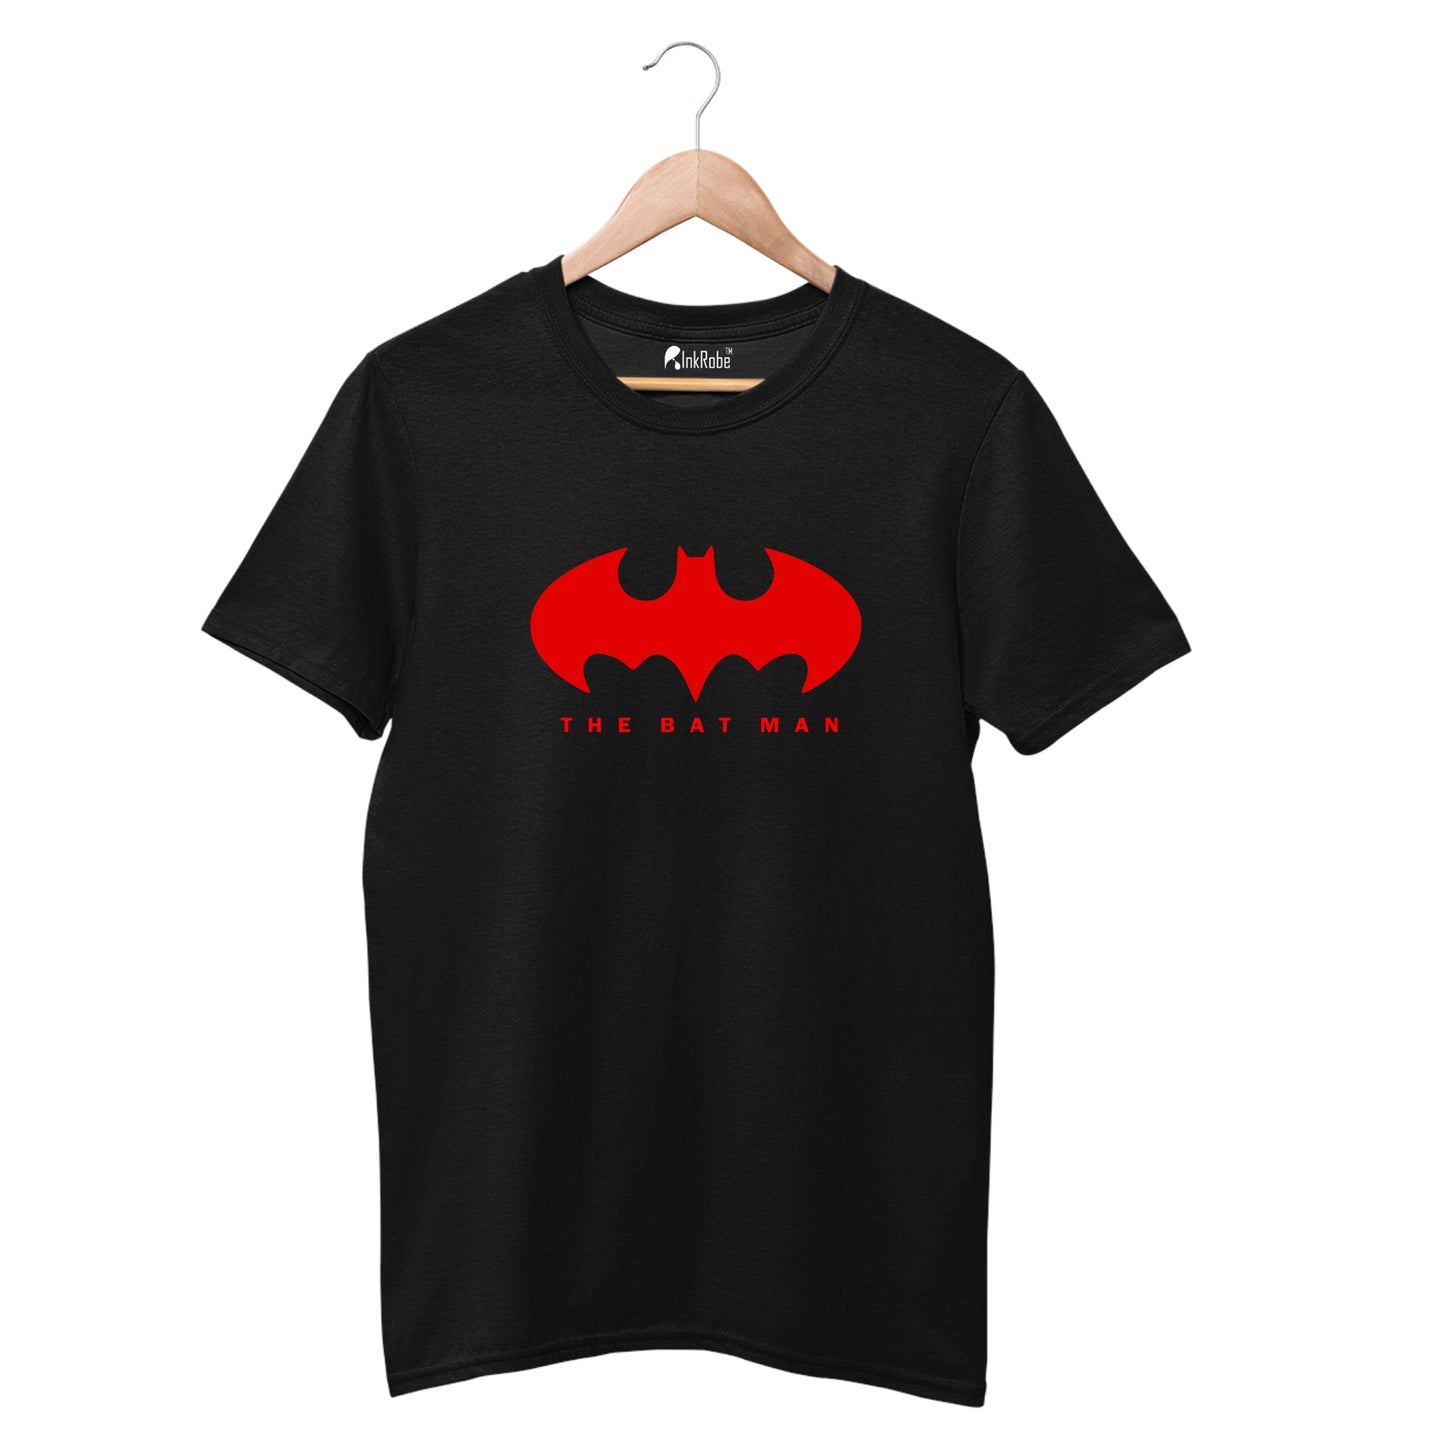 Bat Man Tshirt